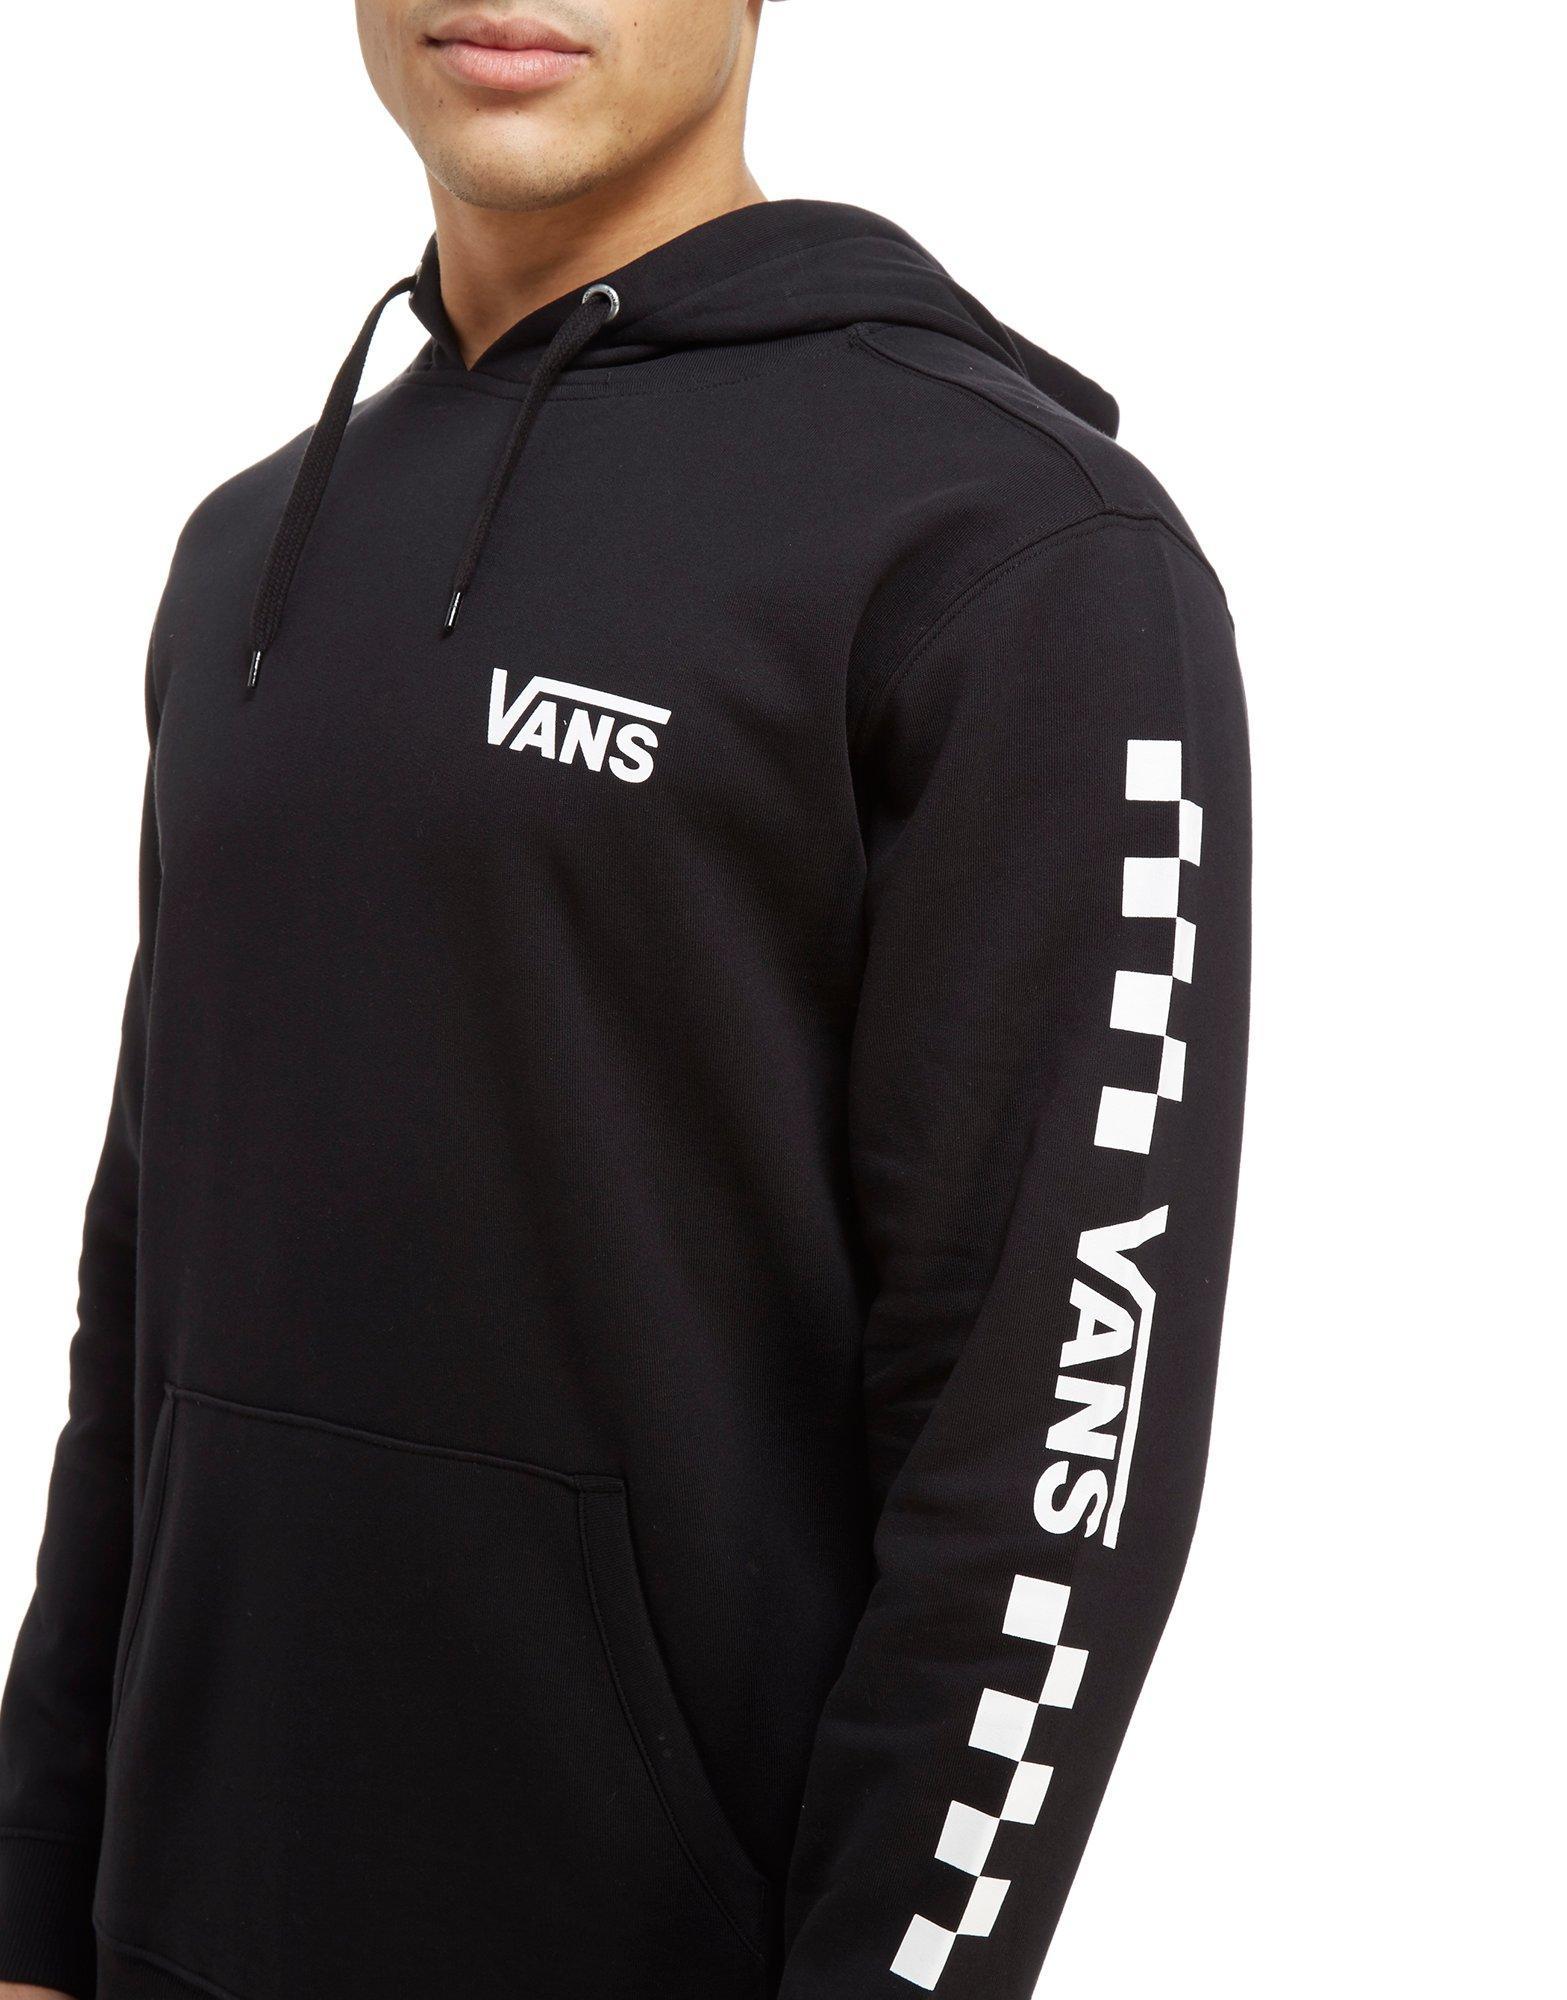 vans hoodie checkered sleeves